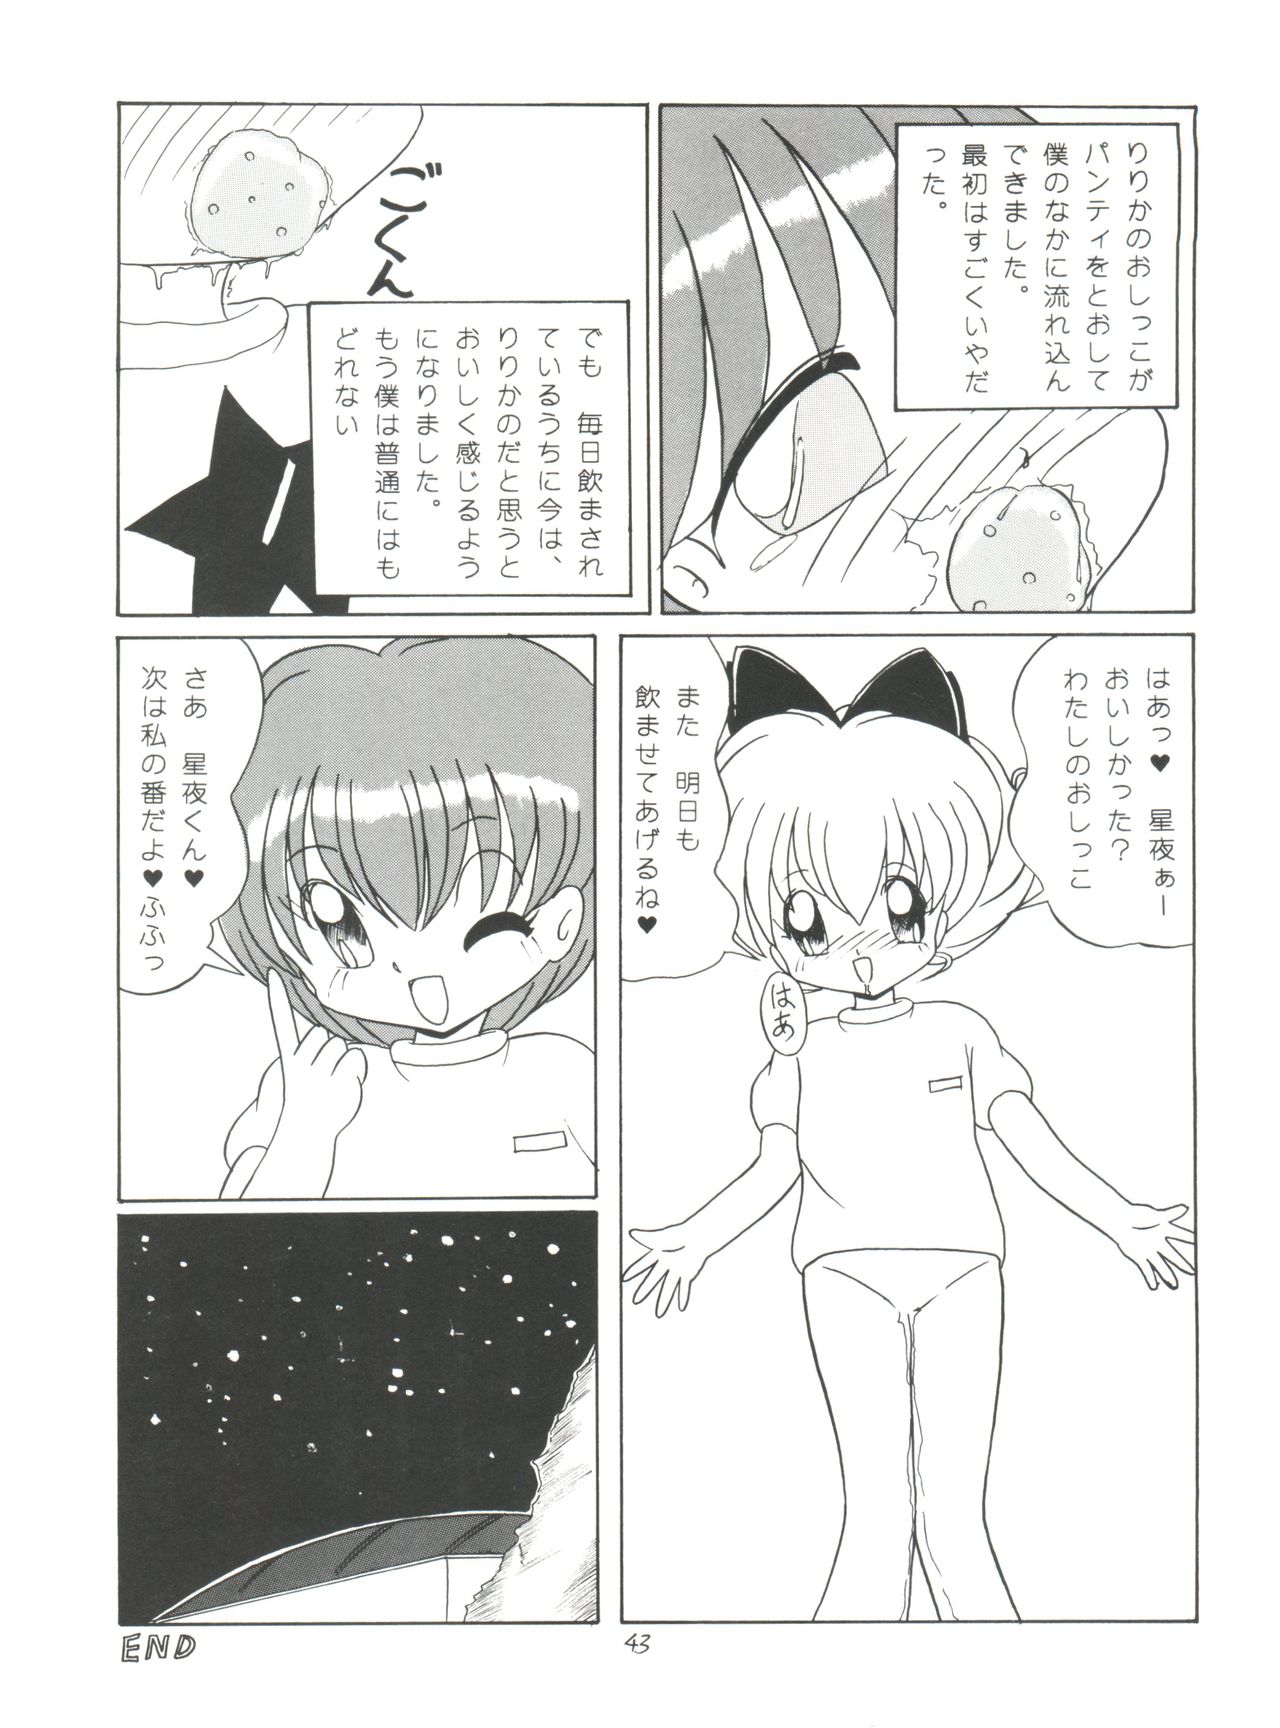 [Momo no Tsubomi (Various)] Lolikko LOVE 4 (Various) page 43 full